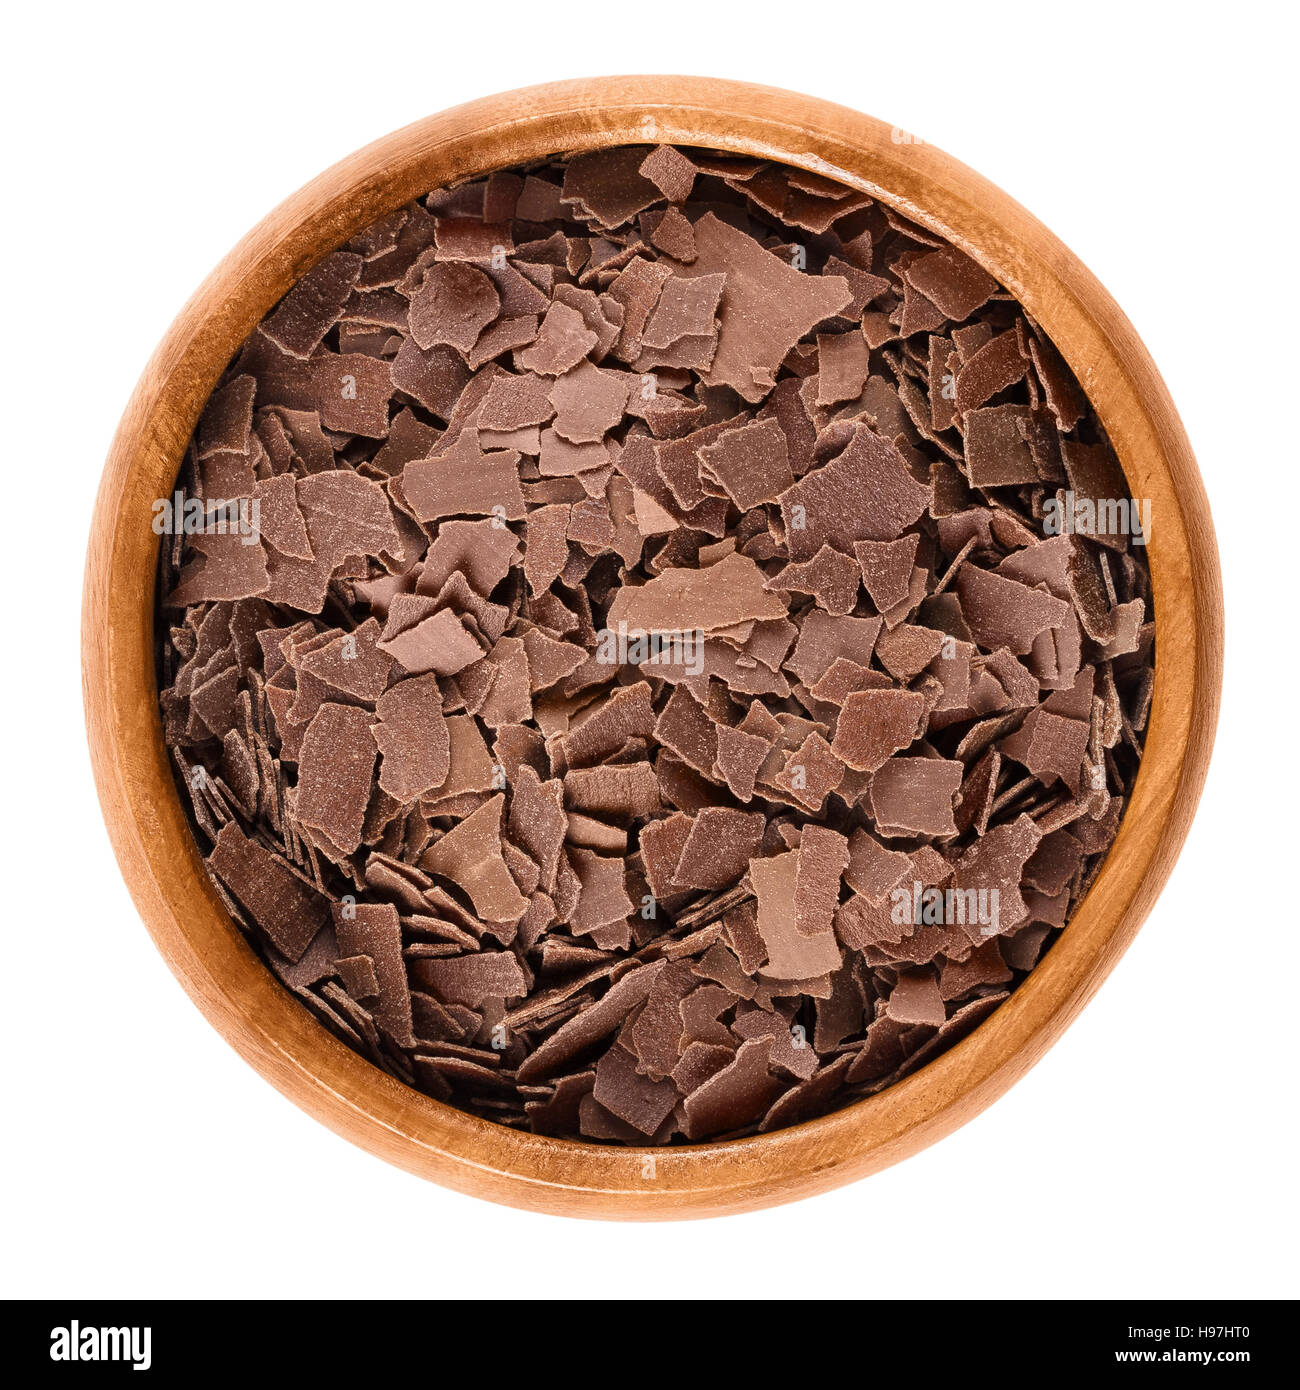 Grattugiate il cioccolato al latte nel recipiente di legno. Brown scaglie di cioccolato per decorare torte, pasticcini e biscotti. Isolate il cibo macro foto Foto Stock